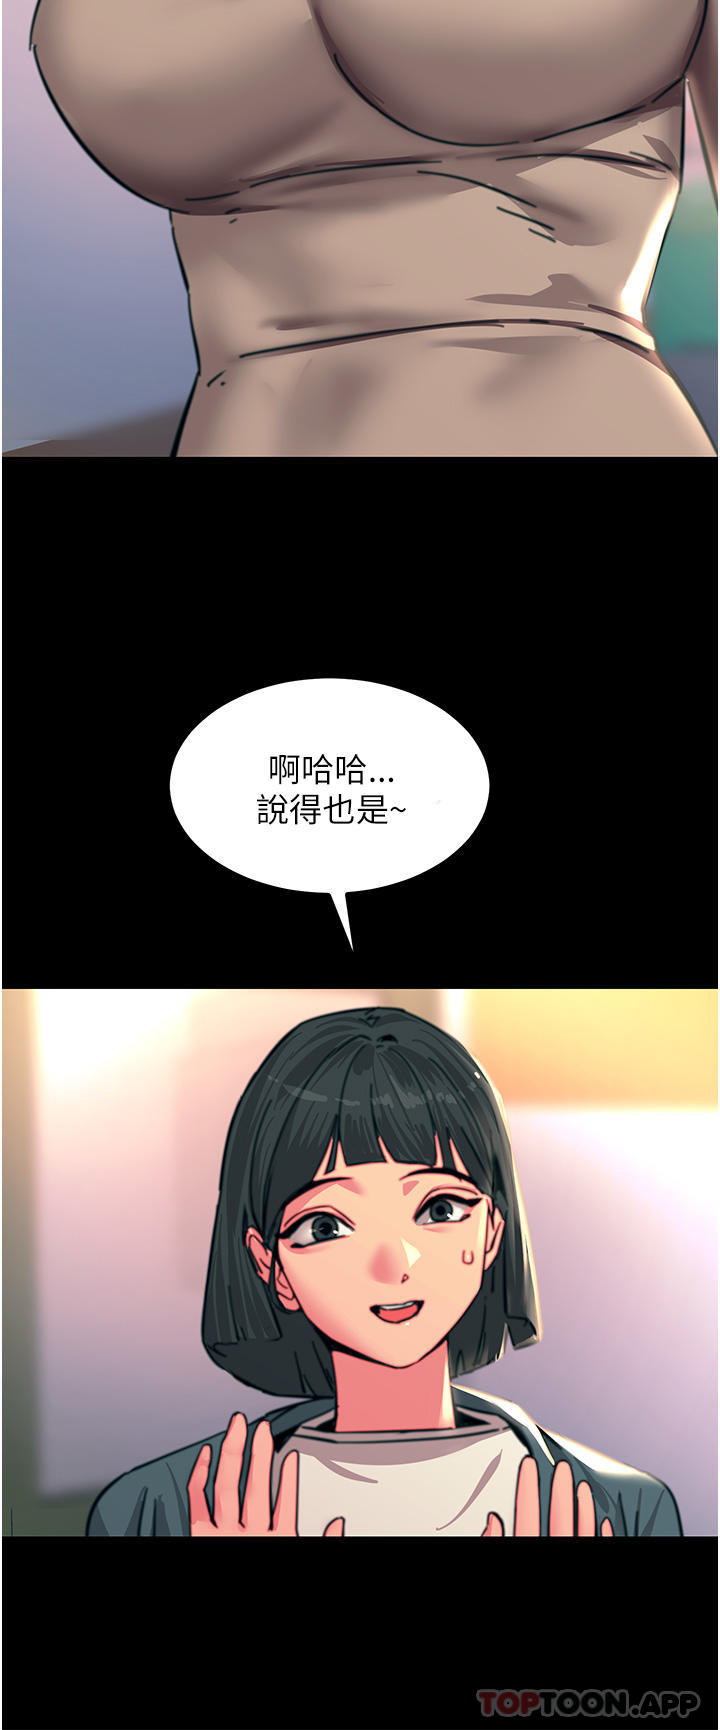 韩国污漫画 觸電大師 第44话-寻找第二个性奴 37